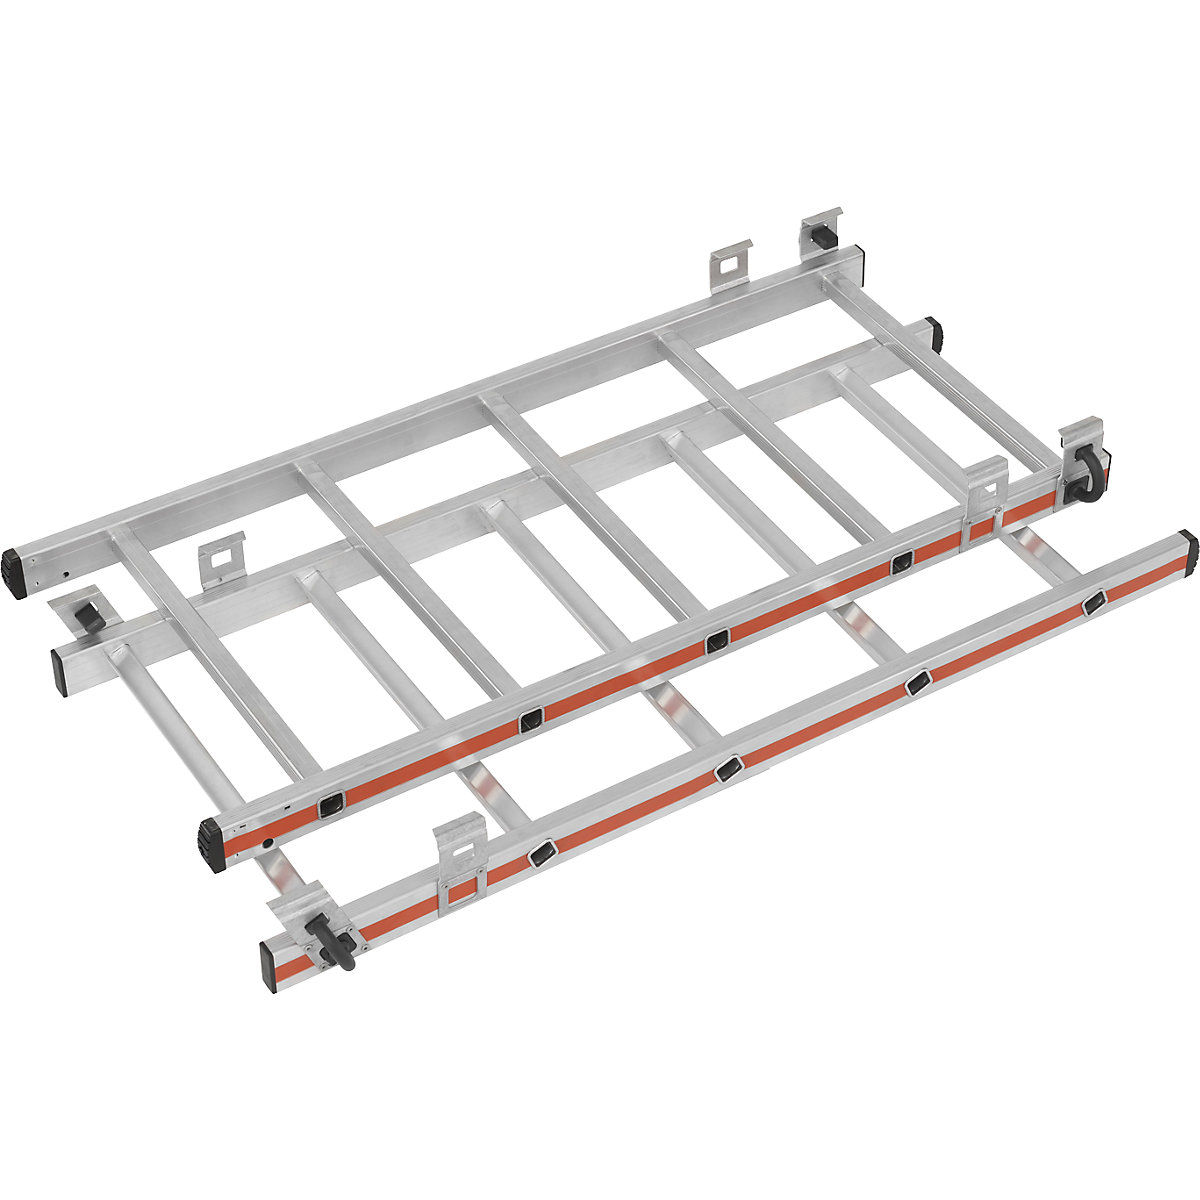 Kit d'extension pour réglage en hauteur – HYMER, pour plate-forme mobile en aluminium, 2 x 5 échelons-1